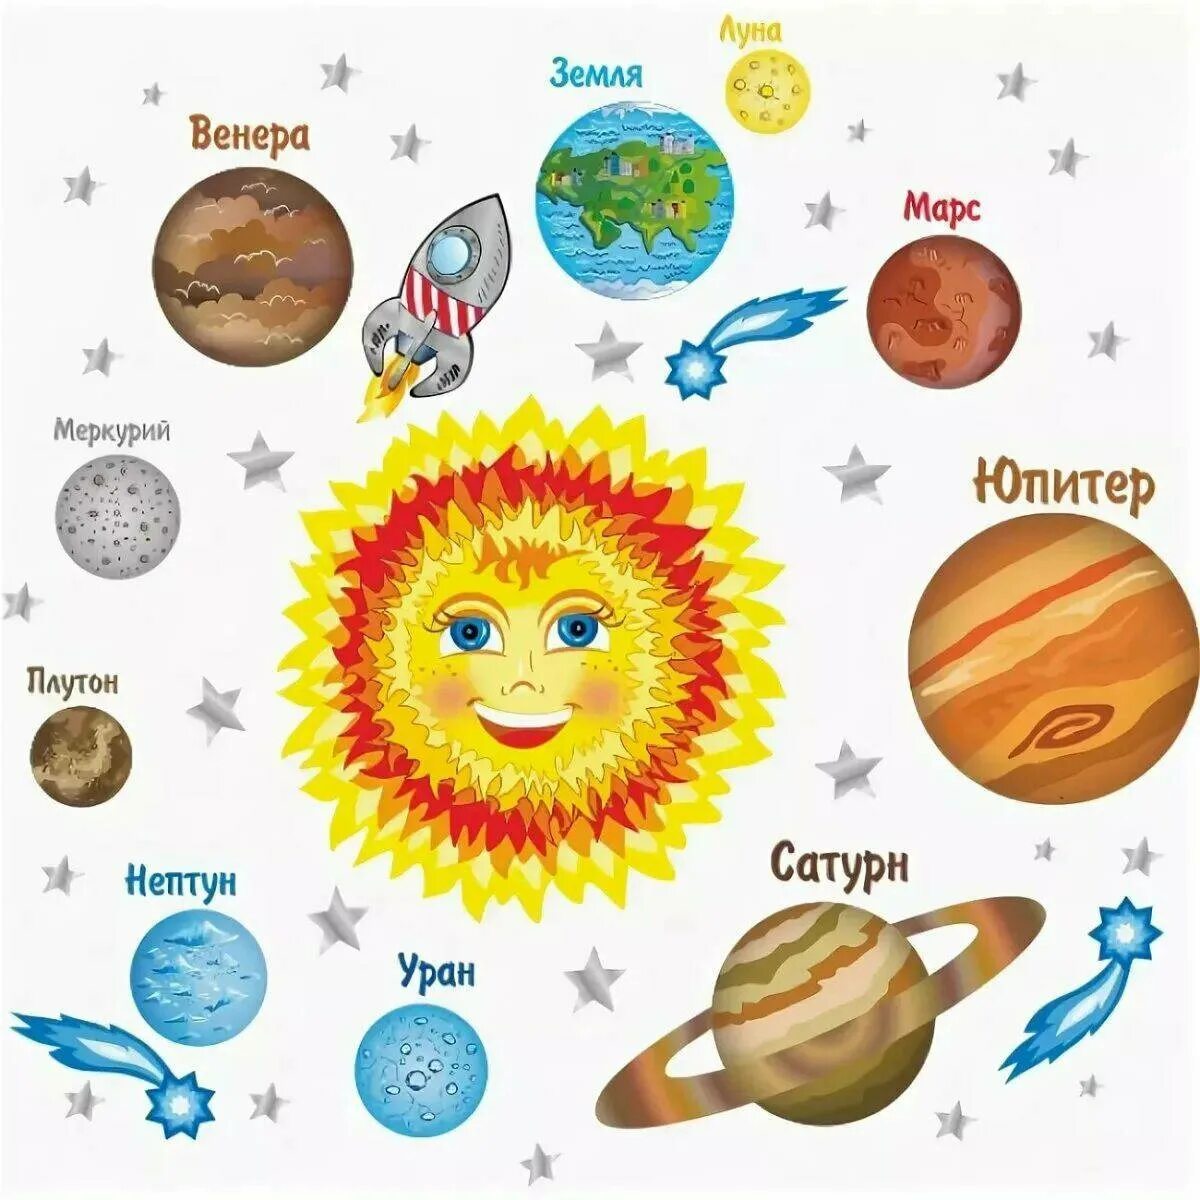 Солнечная система рисунок с названиями планет для детей. Солнечная система для дет. С12нечная система 32я 3етей. Планеты Солнечная системы д я детей. Космос для детей названия